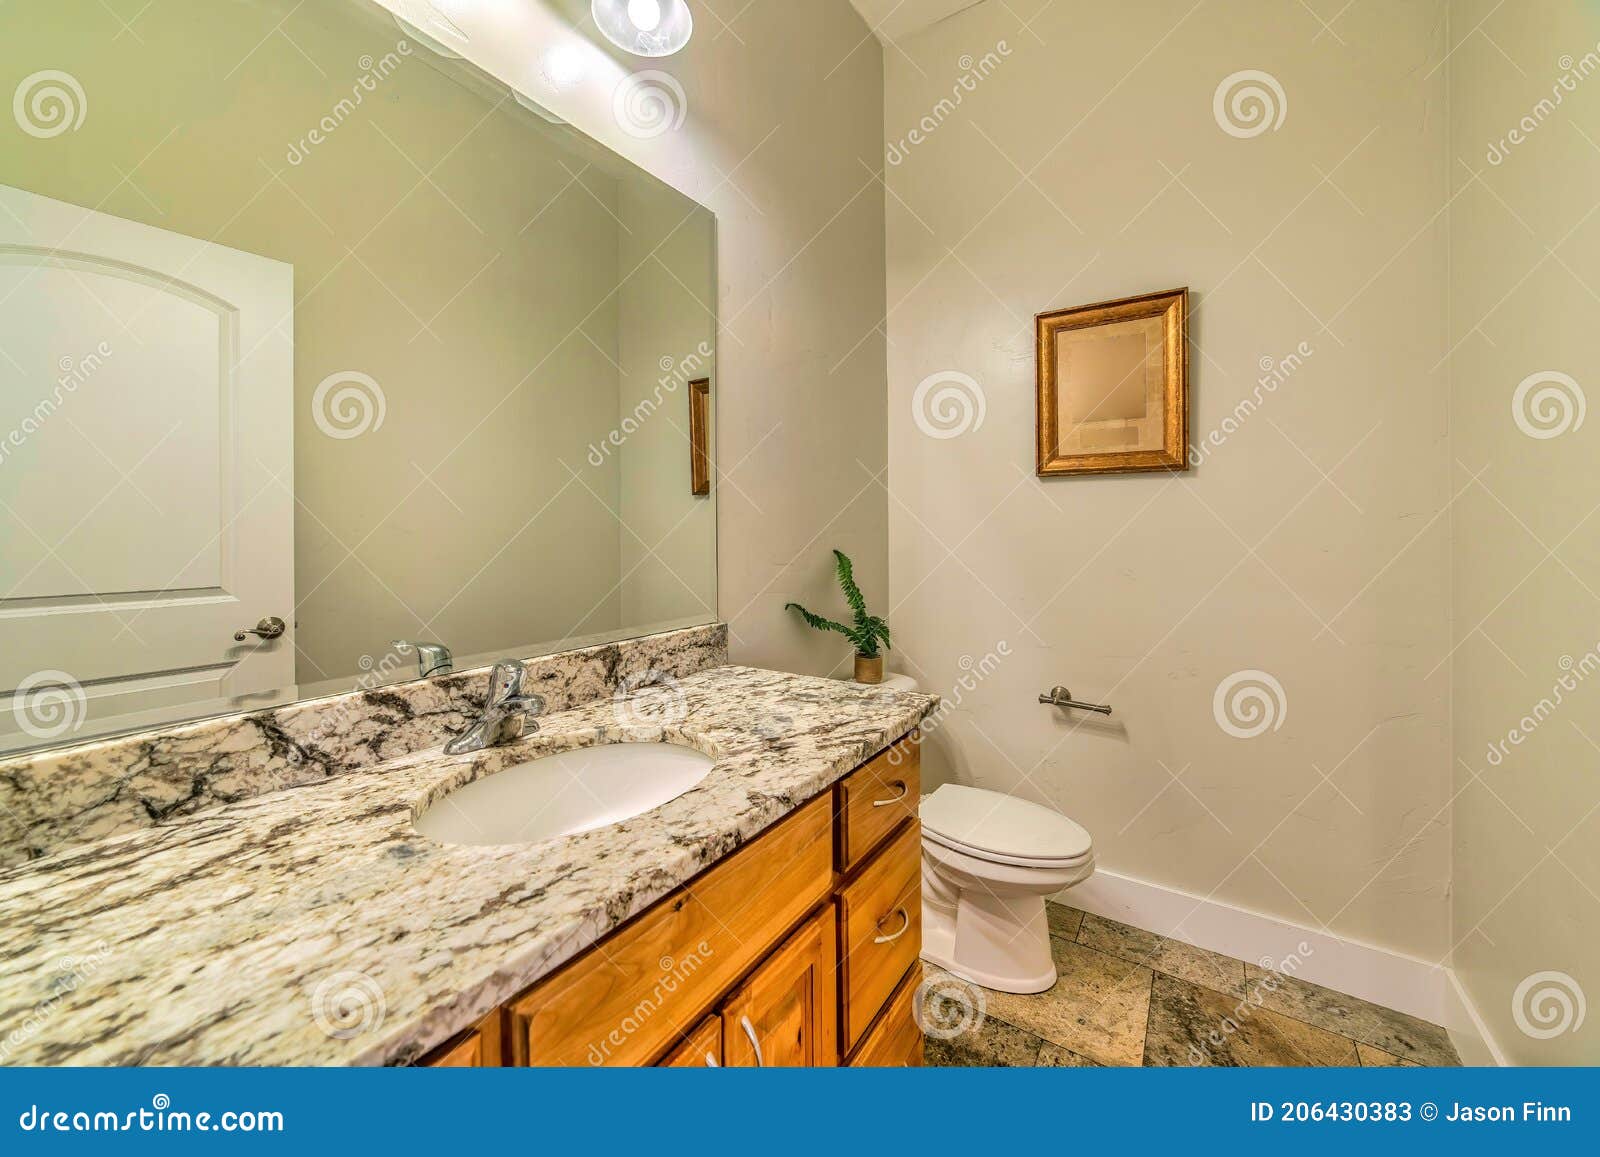 Hauptbadezimmer Mit Toilette Neben Marmorcountertop Mit Ablagen Und Ovaler  Waschbecken Stockbild - Bild von badezimmer, hahn: 206430383